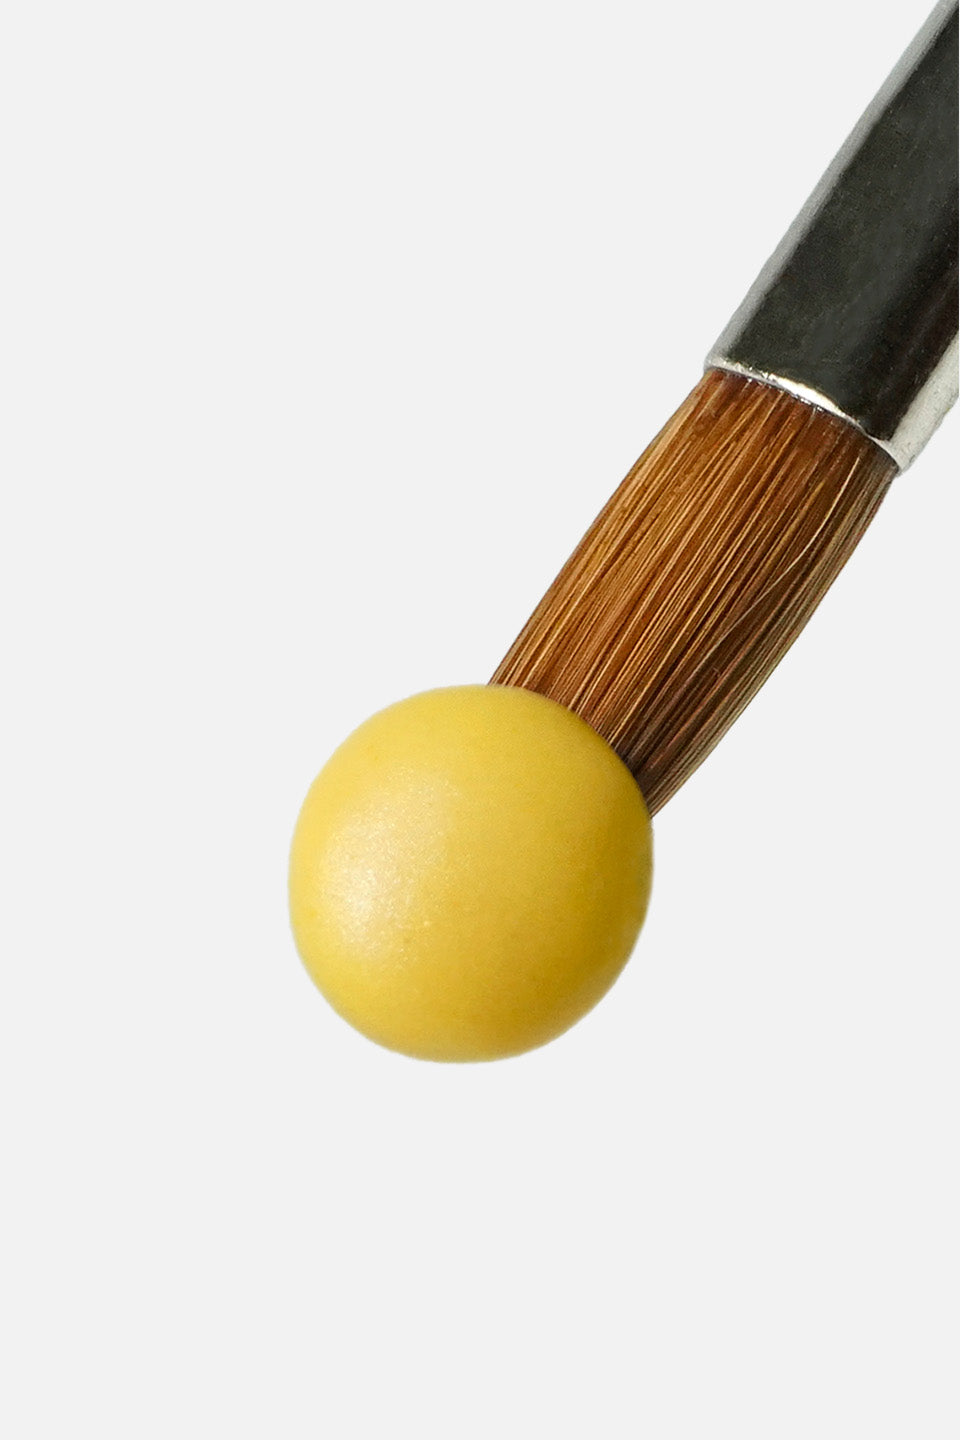 Polvere acrilica giallo limone 5 g